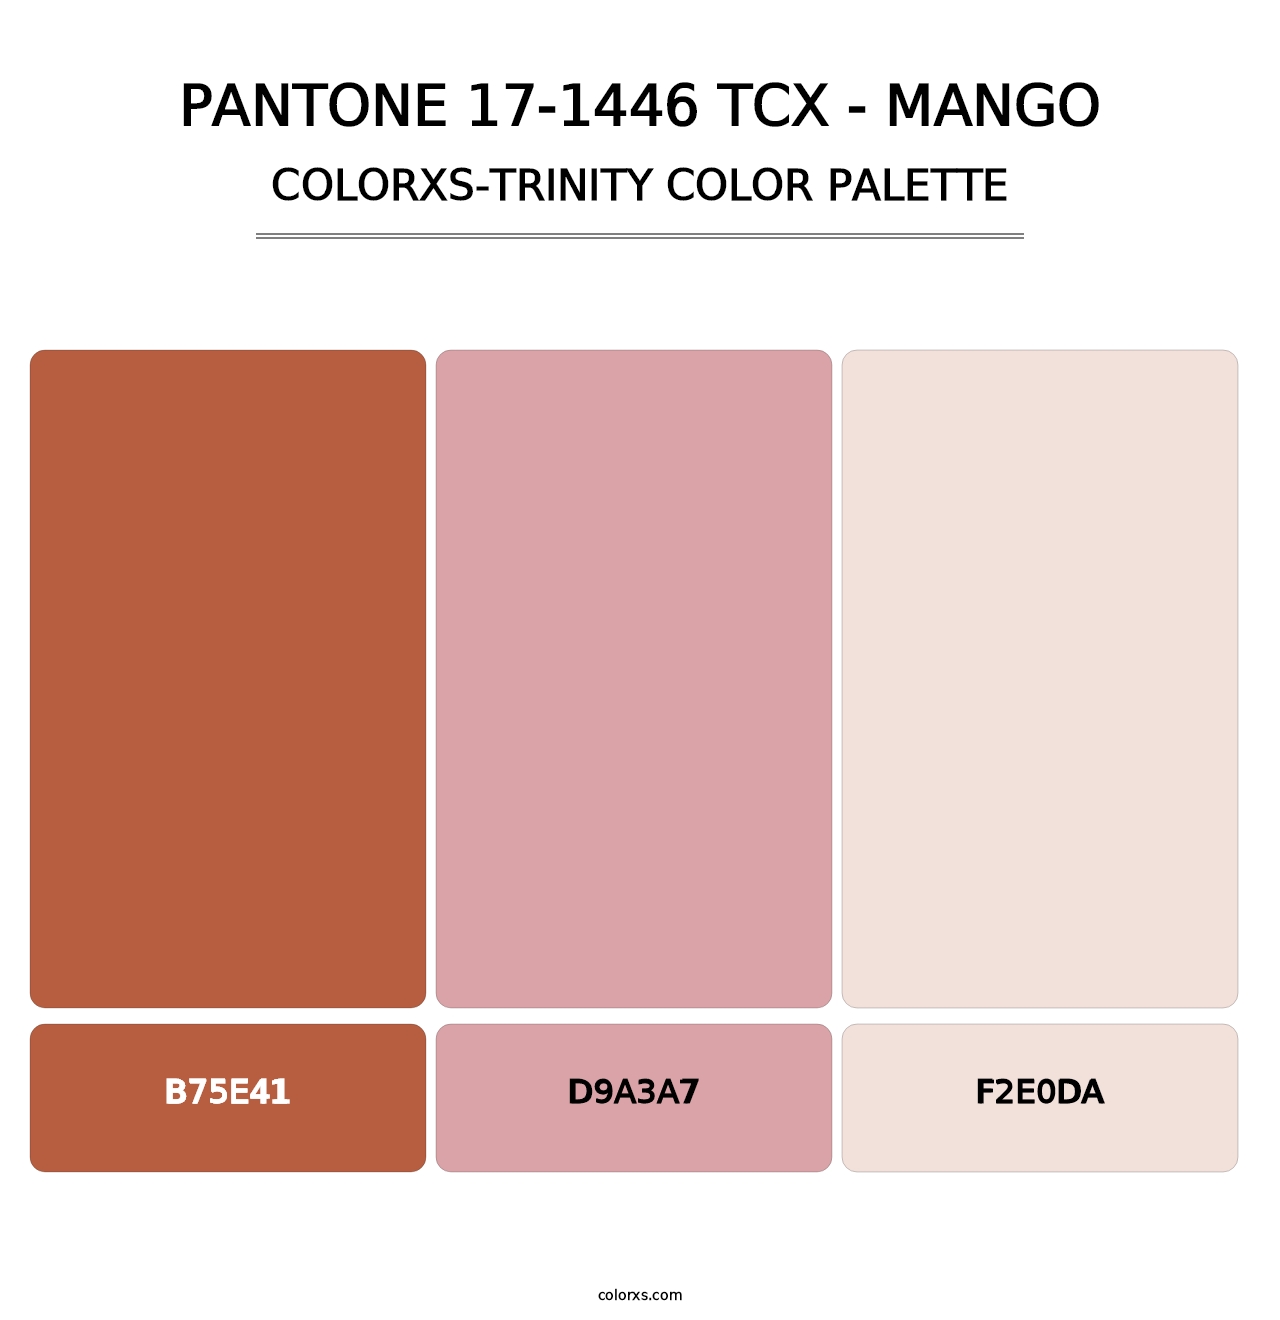 PANTONE 17-1446 TCX - Mango - Colorxs Trinity Palette